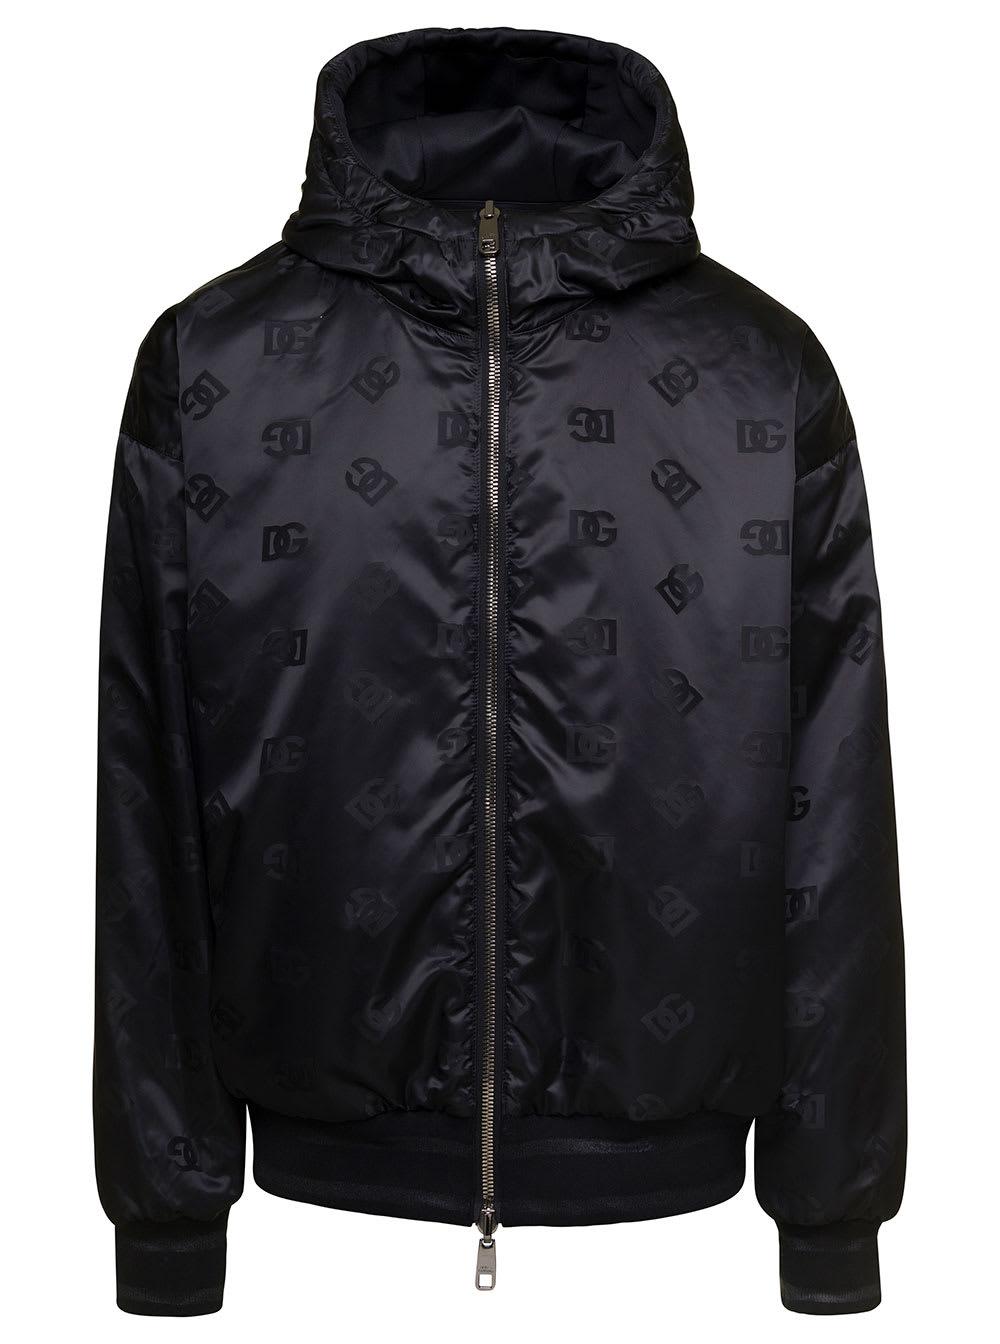 Louis Vuitton - Black Leather Jacket (Reversible)